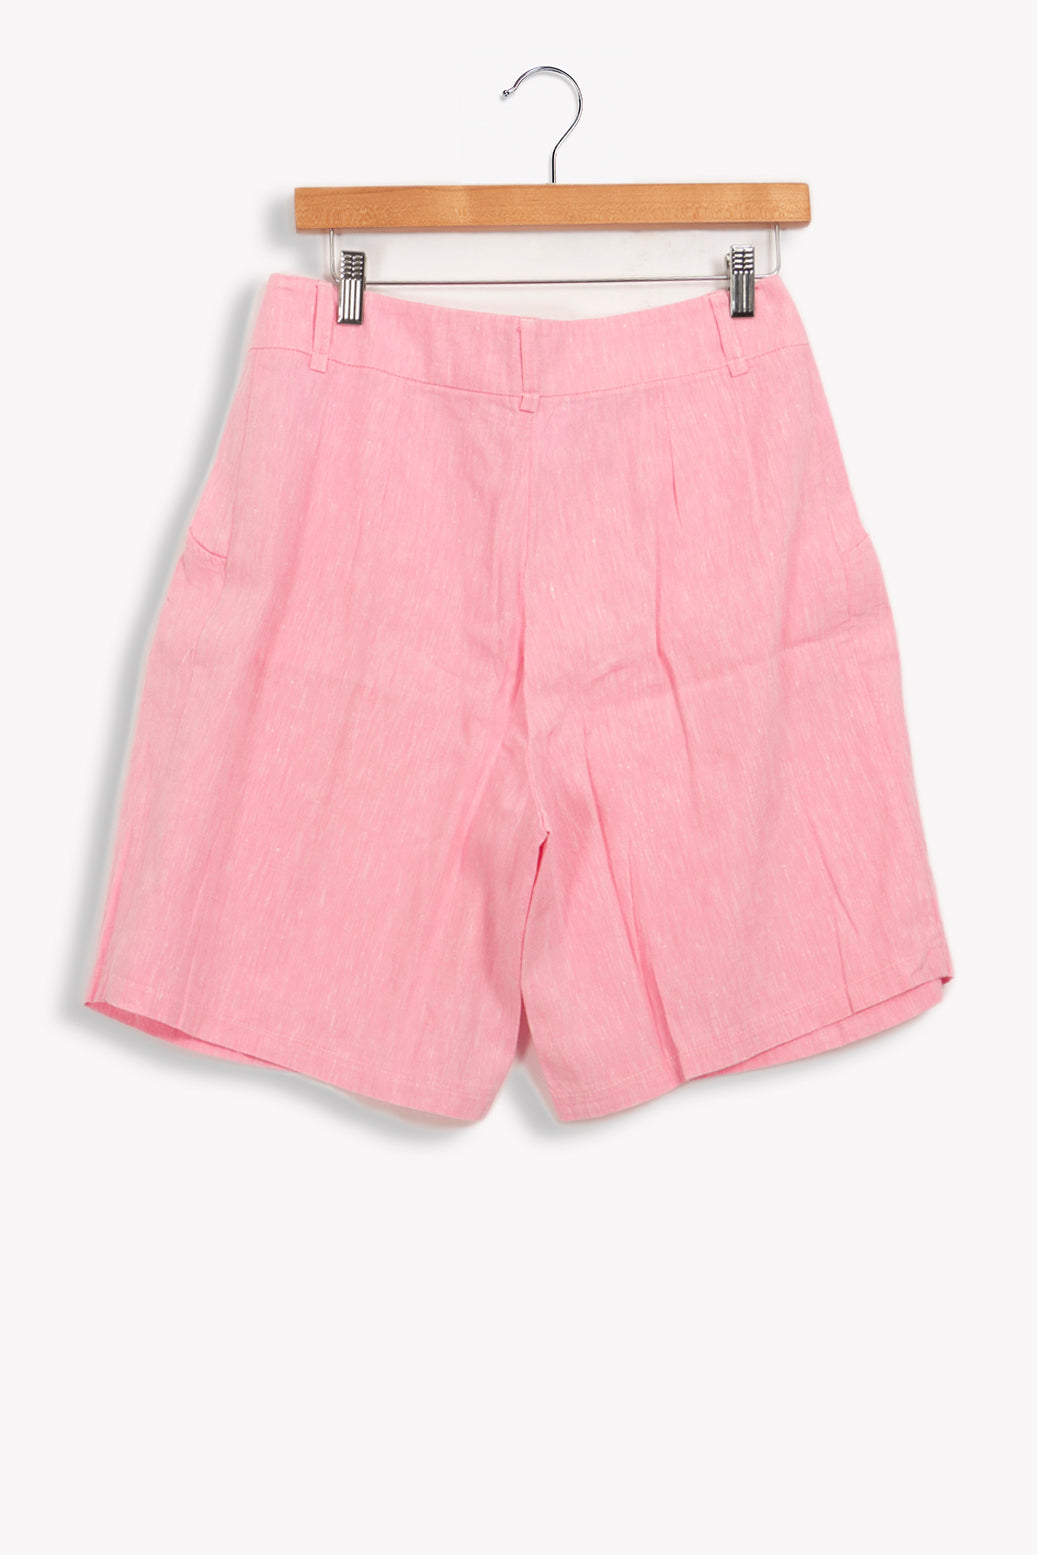 Pink shorts - 38